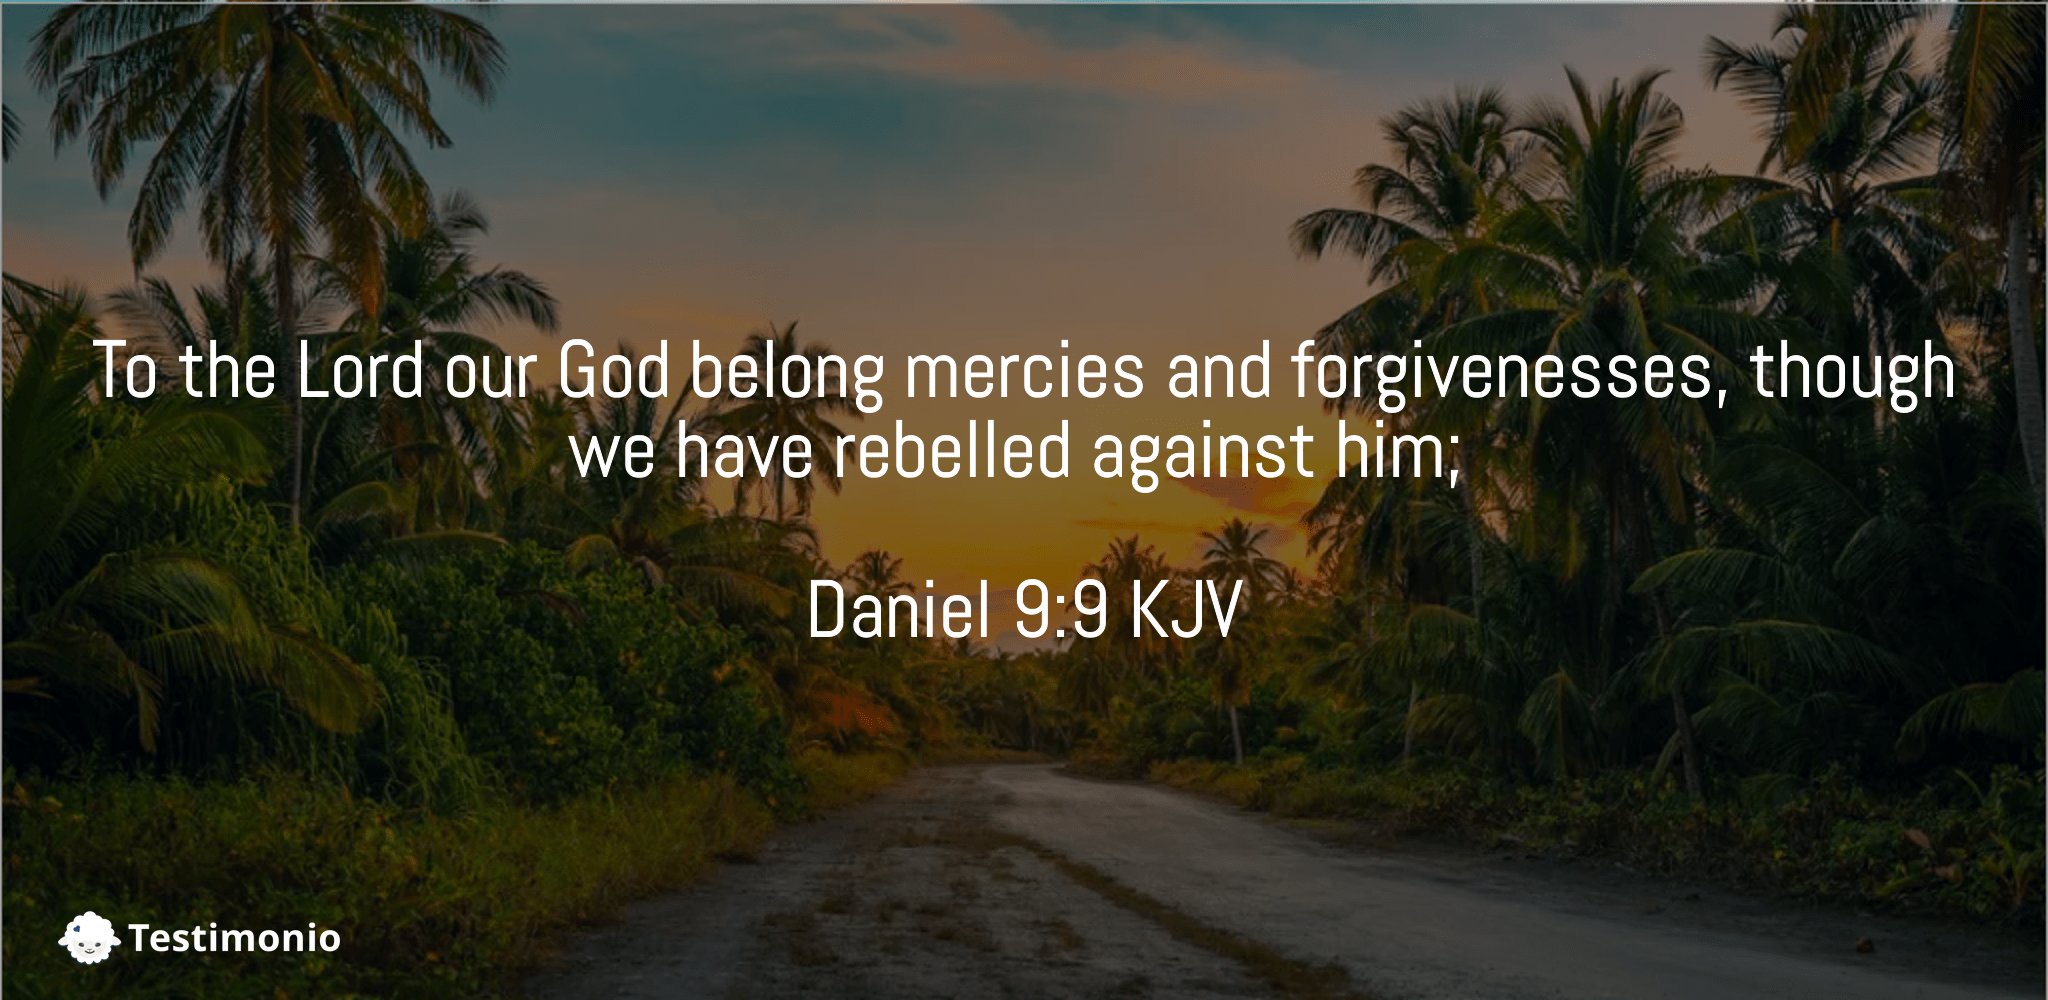 Daniel 9:9